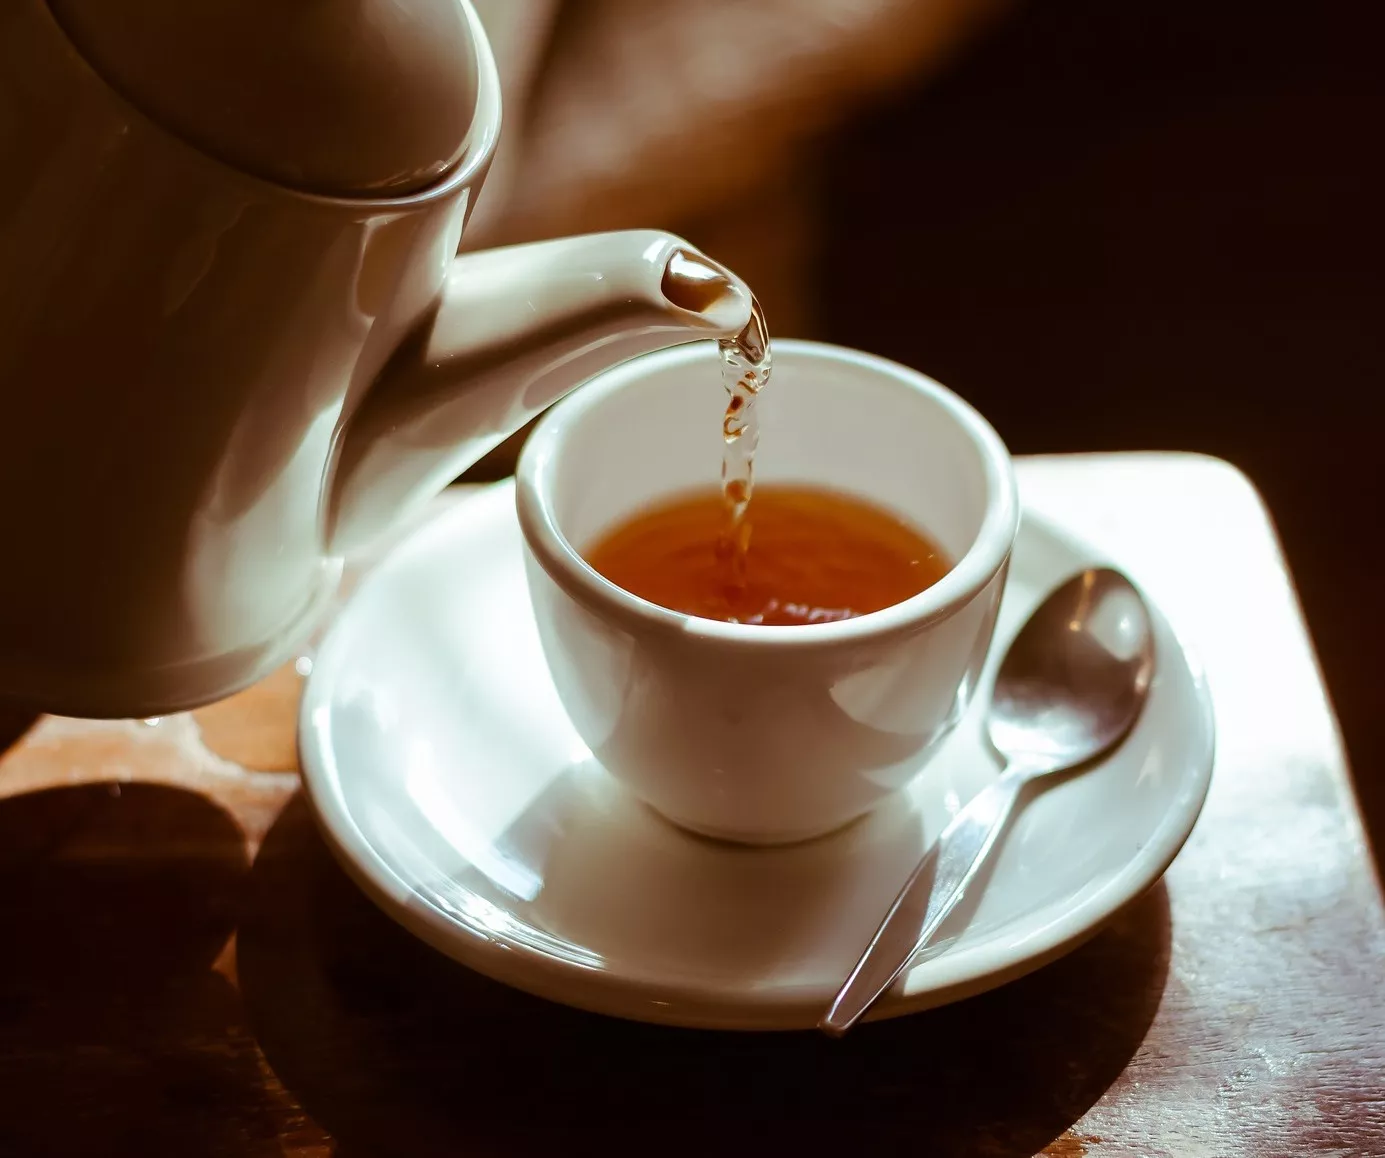 Тушь для глаз можно развести чаем / Фото: pixabay